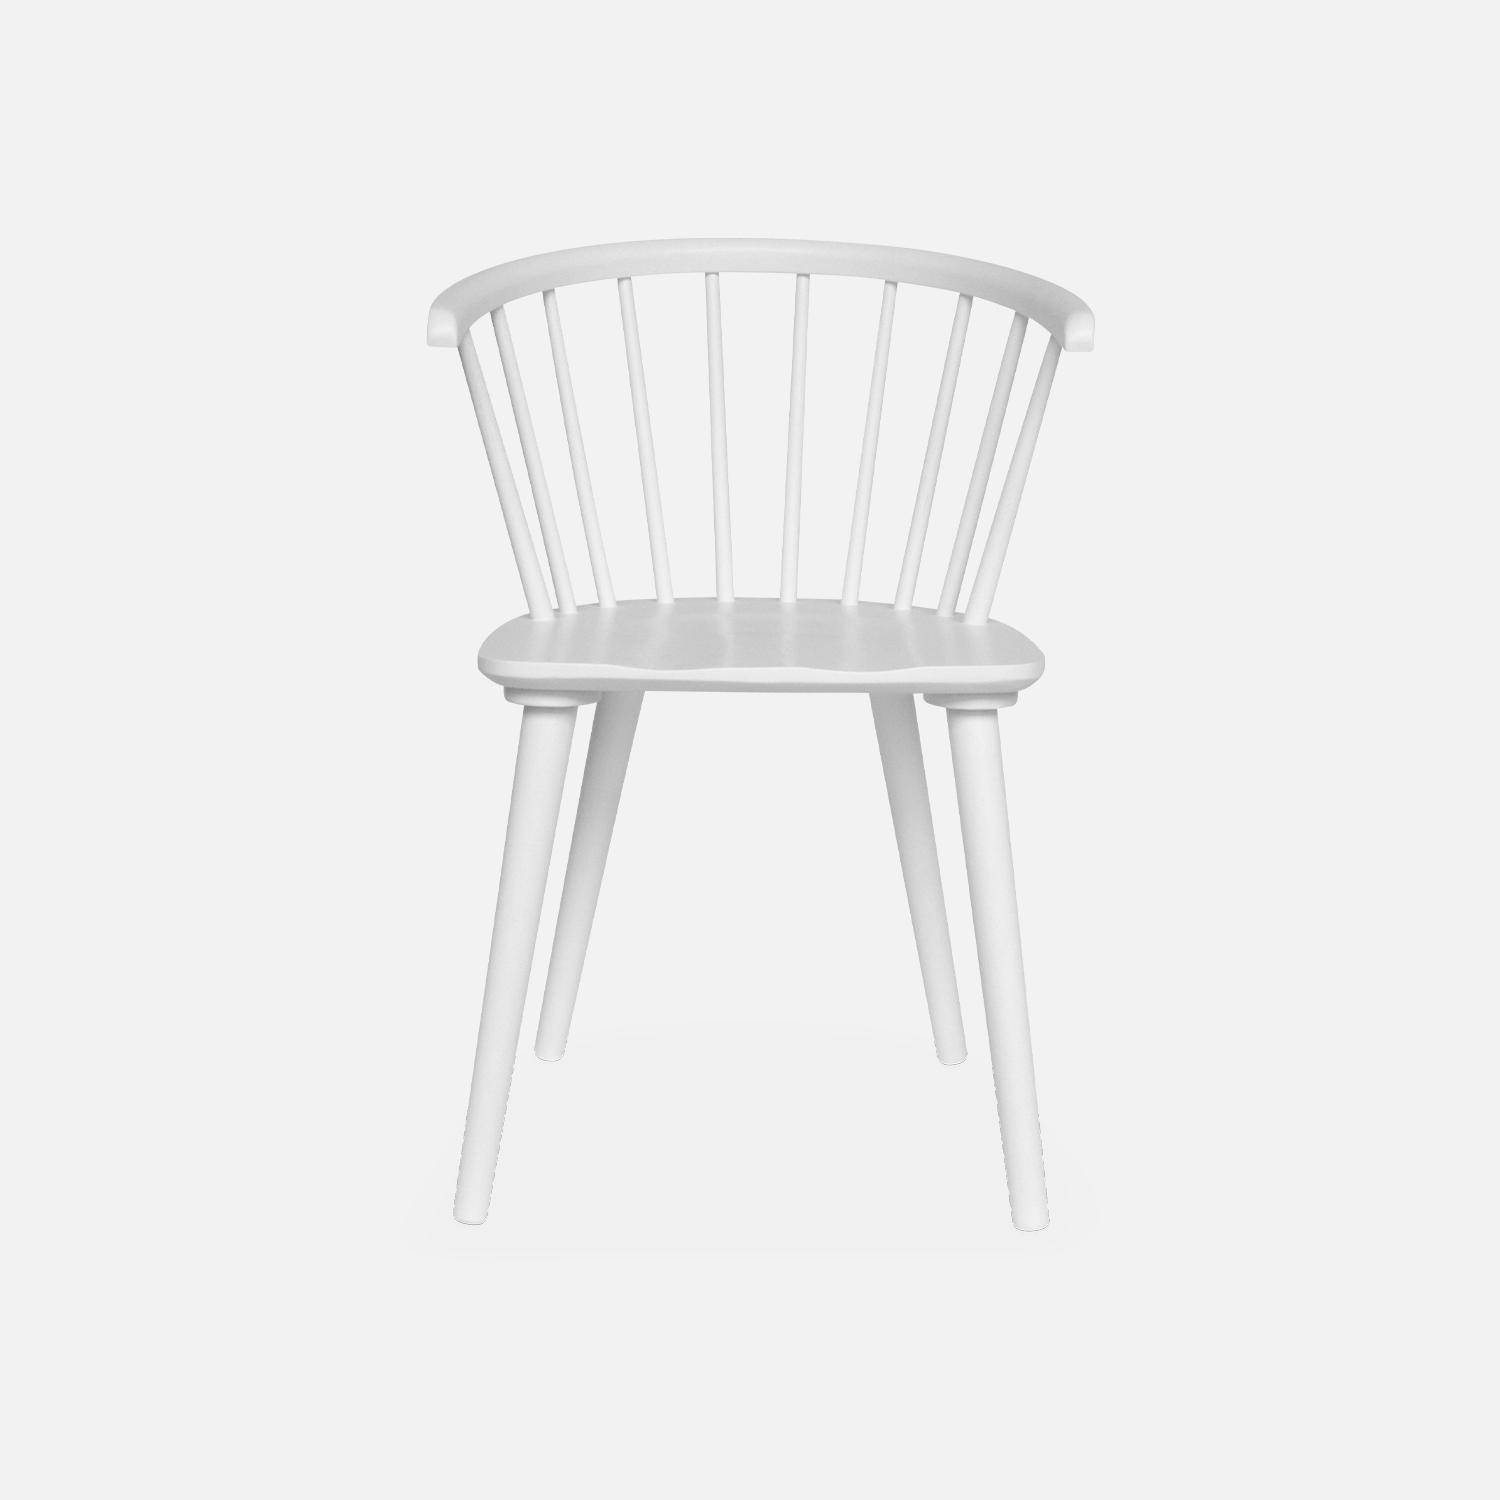 Juego de 2 sillas de bar de madera y contrachapado blanco, Paula, An 51 x Pr 53 x Al 75cm Photo4